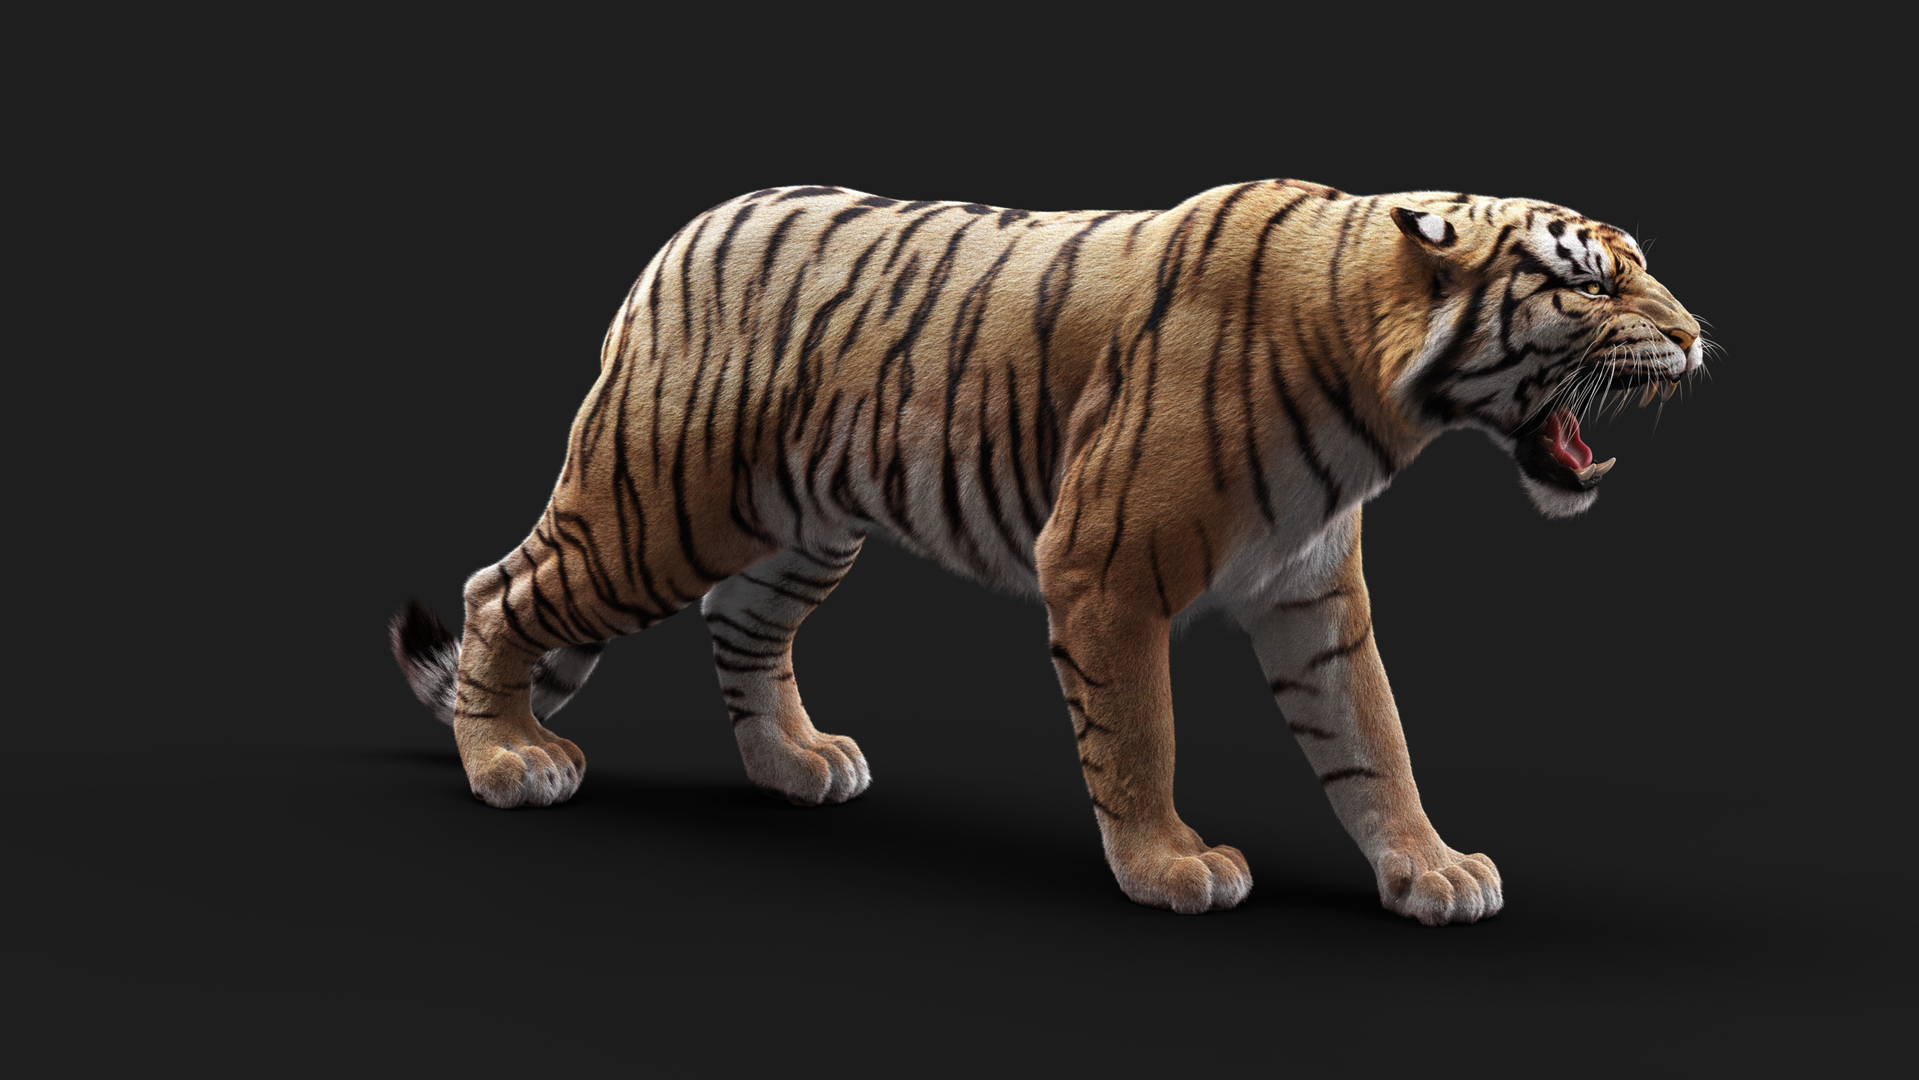 Bengal Tiger 3D Model